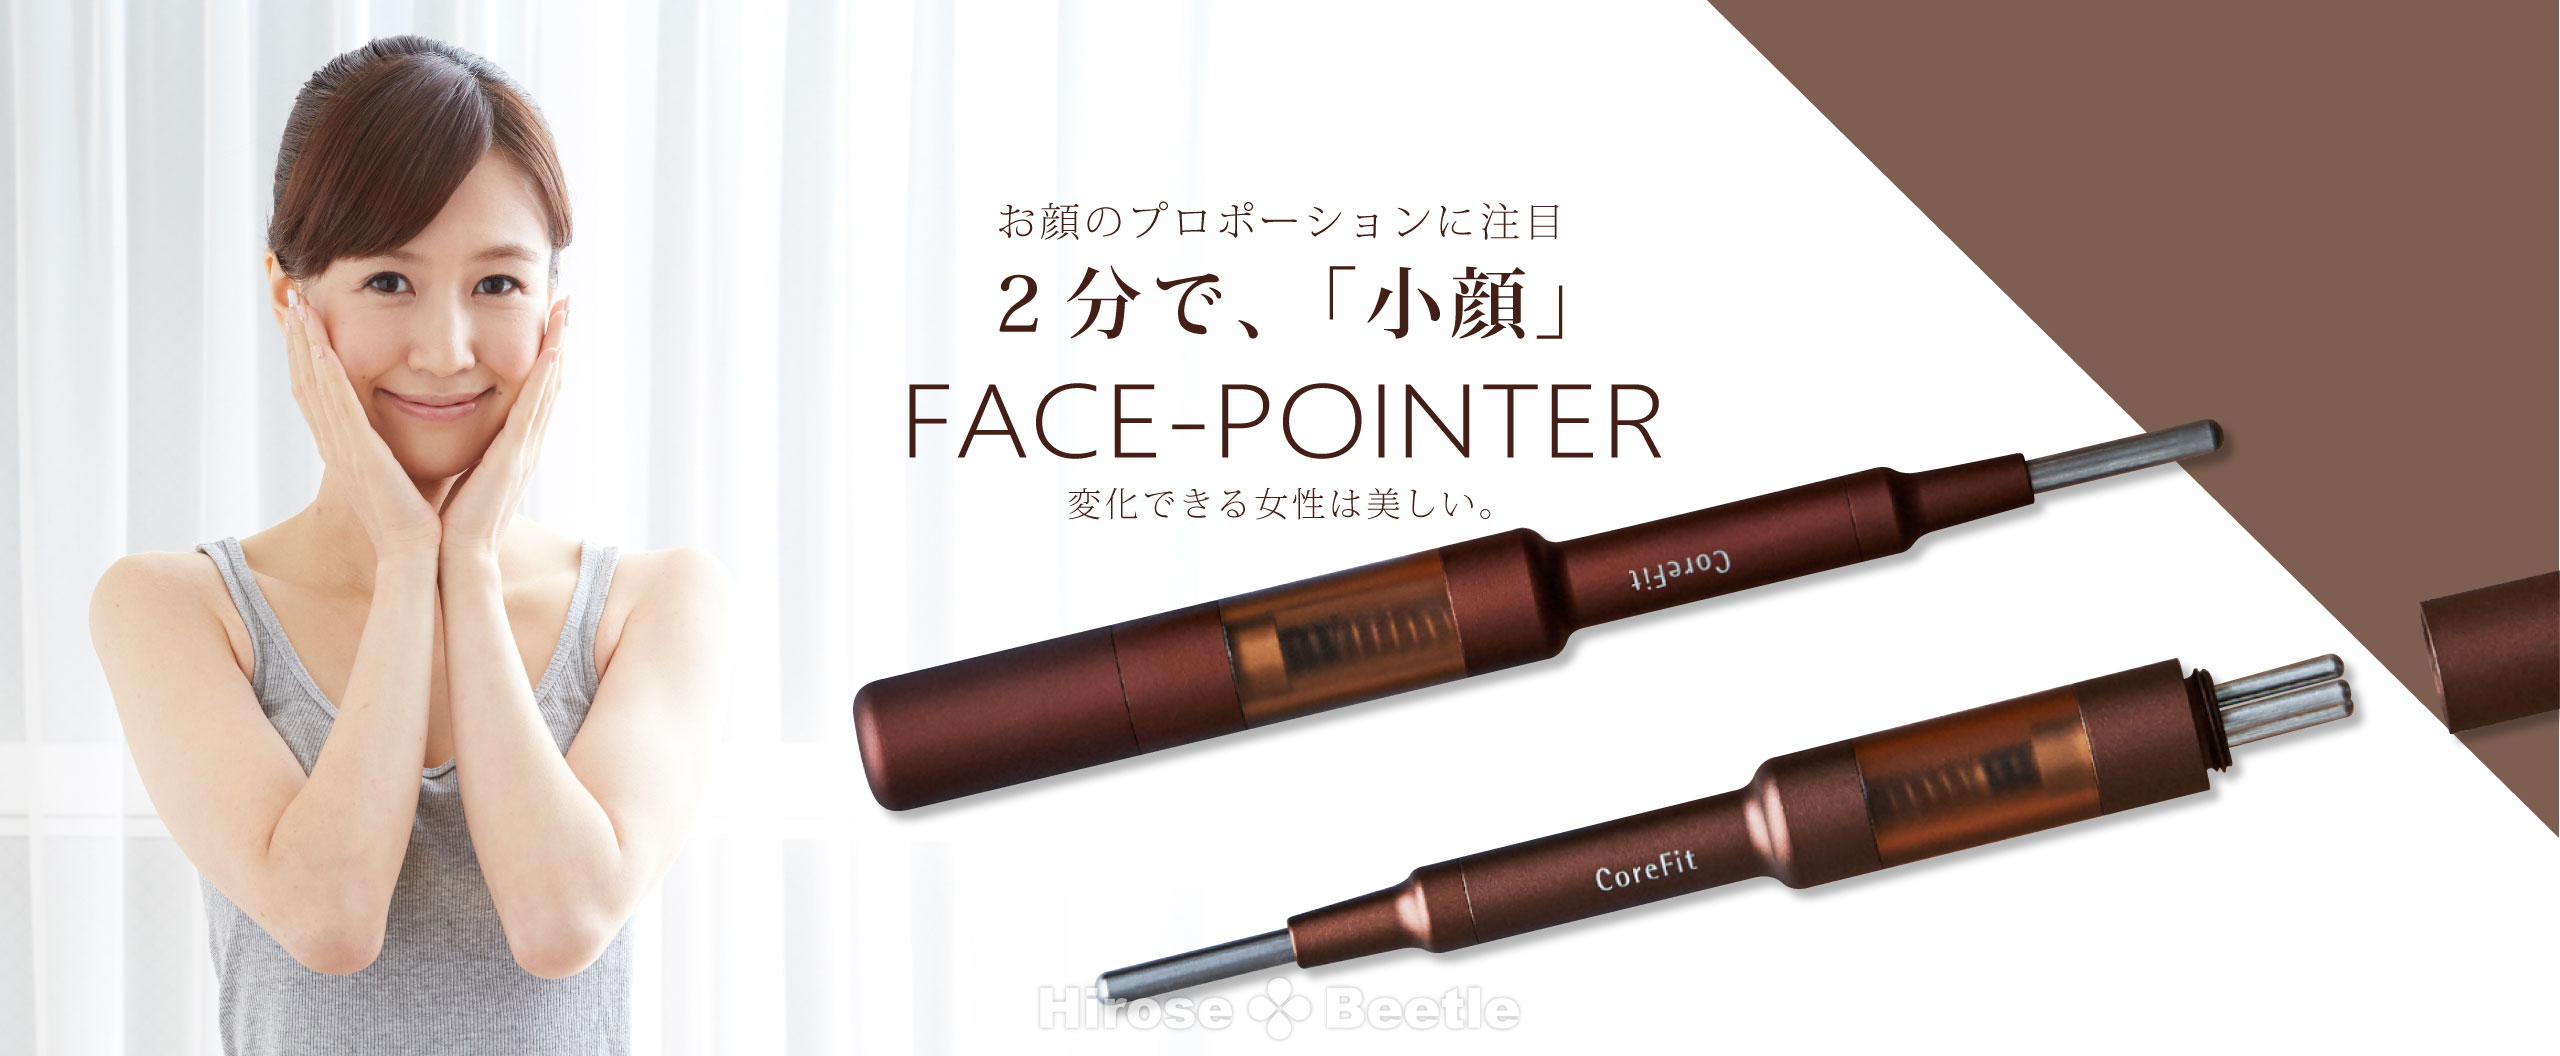 日本人気超絶の CORE FIT Face-Pointer コアフィット フェイス